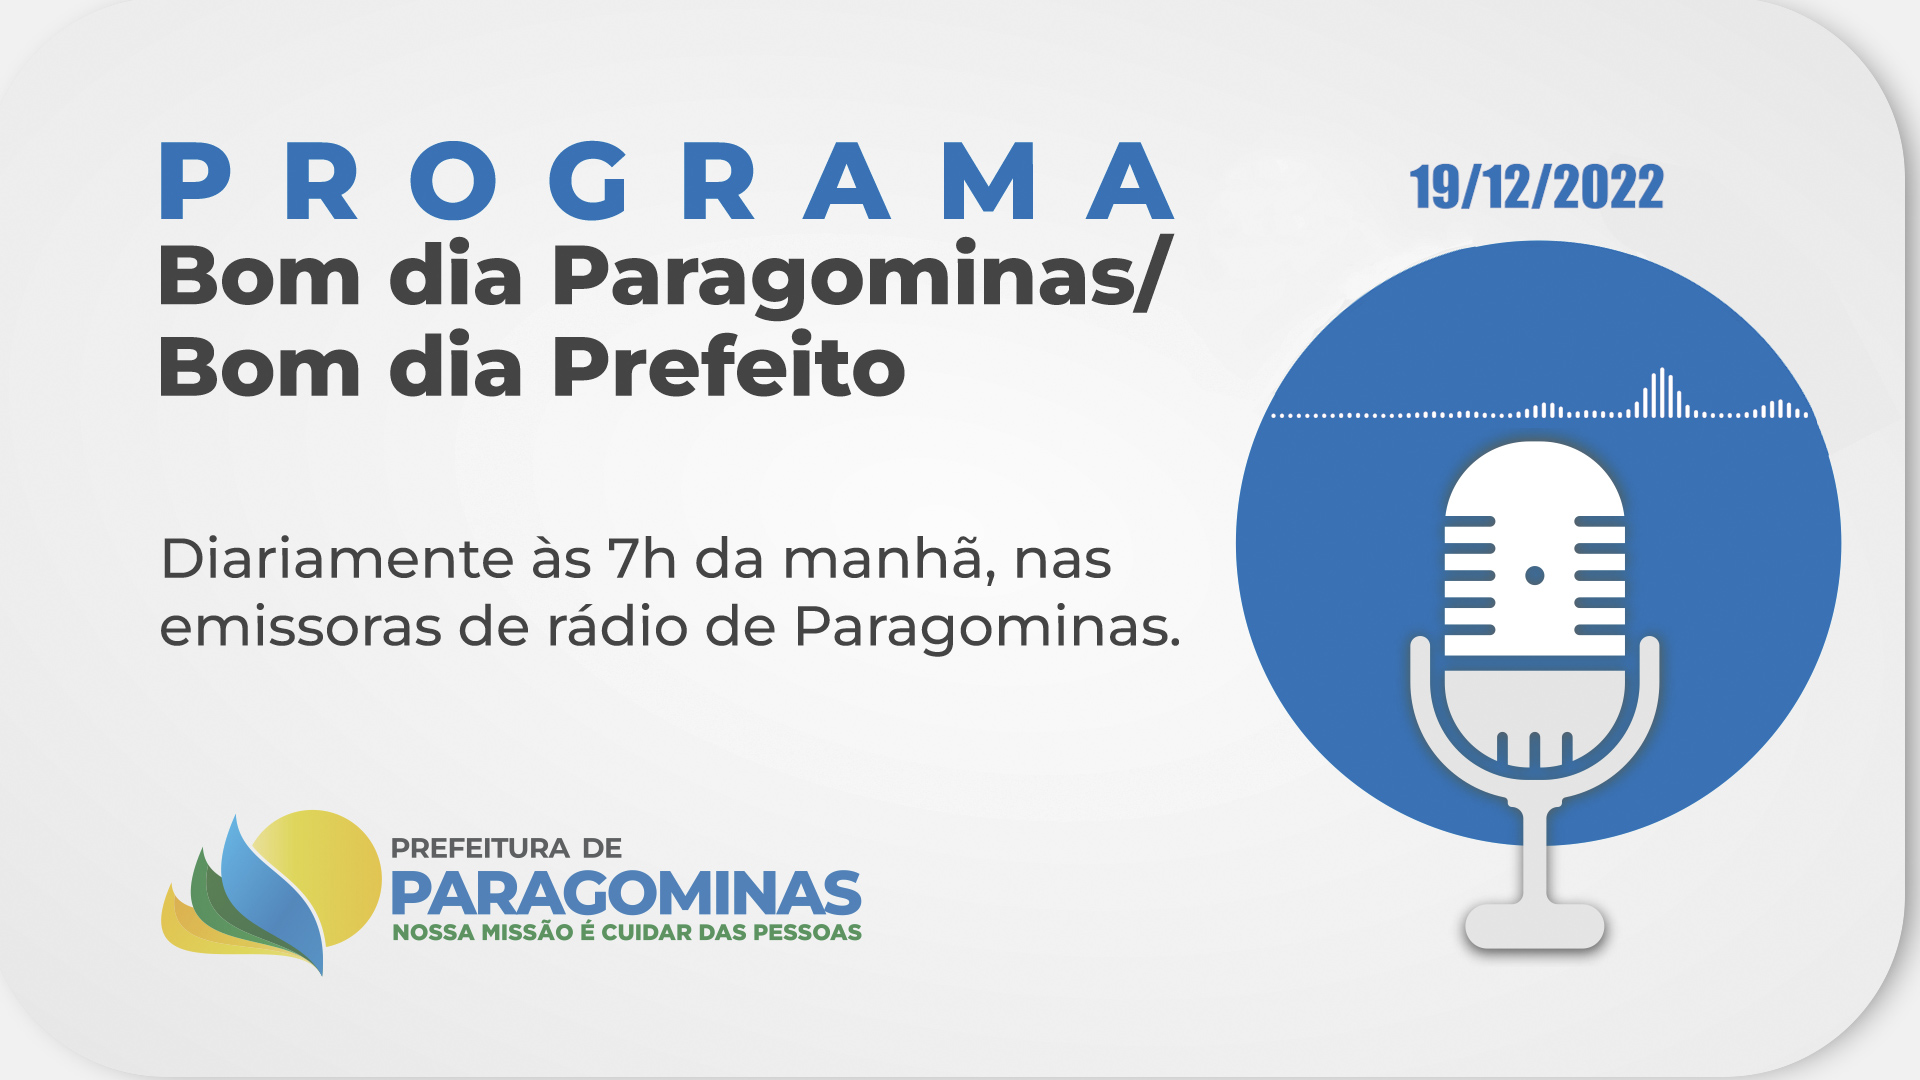 BOM DIA PARAGOMINAS / BOM DIA PREFEITO - 19 DE DEZEMBRO DE 2022 -  Prefeitura Municipal de Paragominas | Gestão 2021-2024